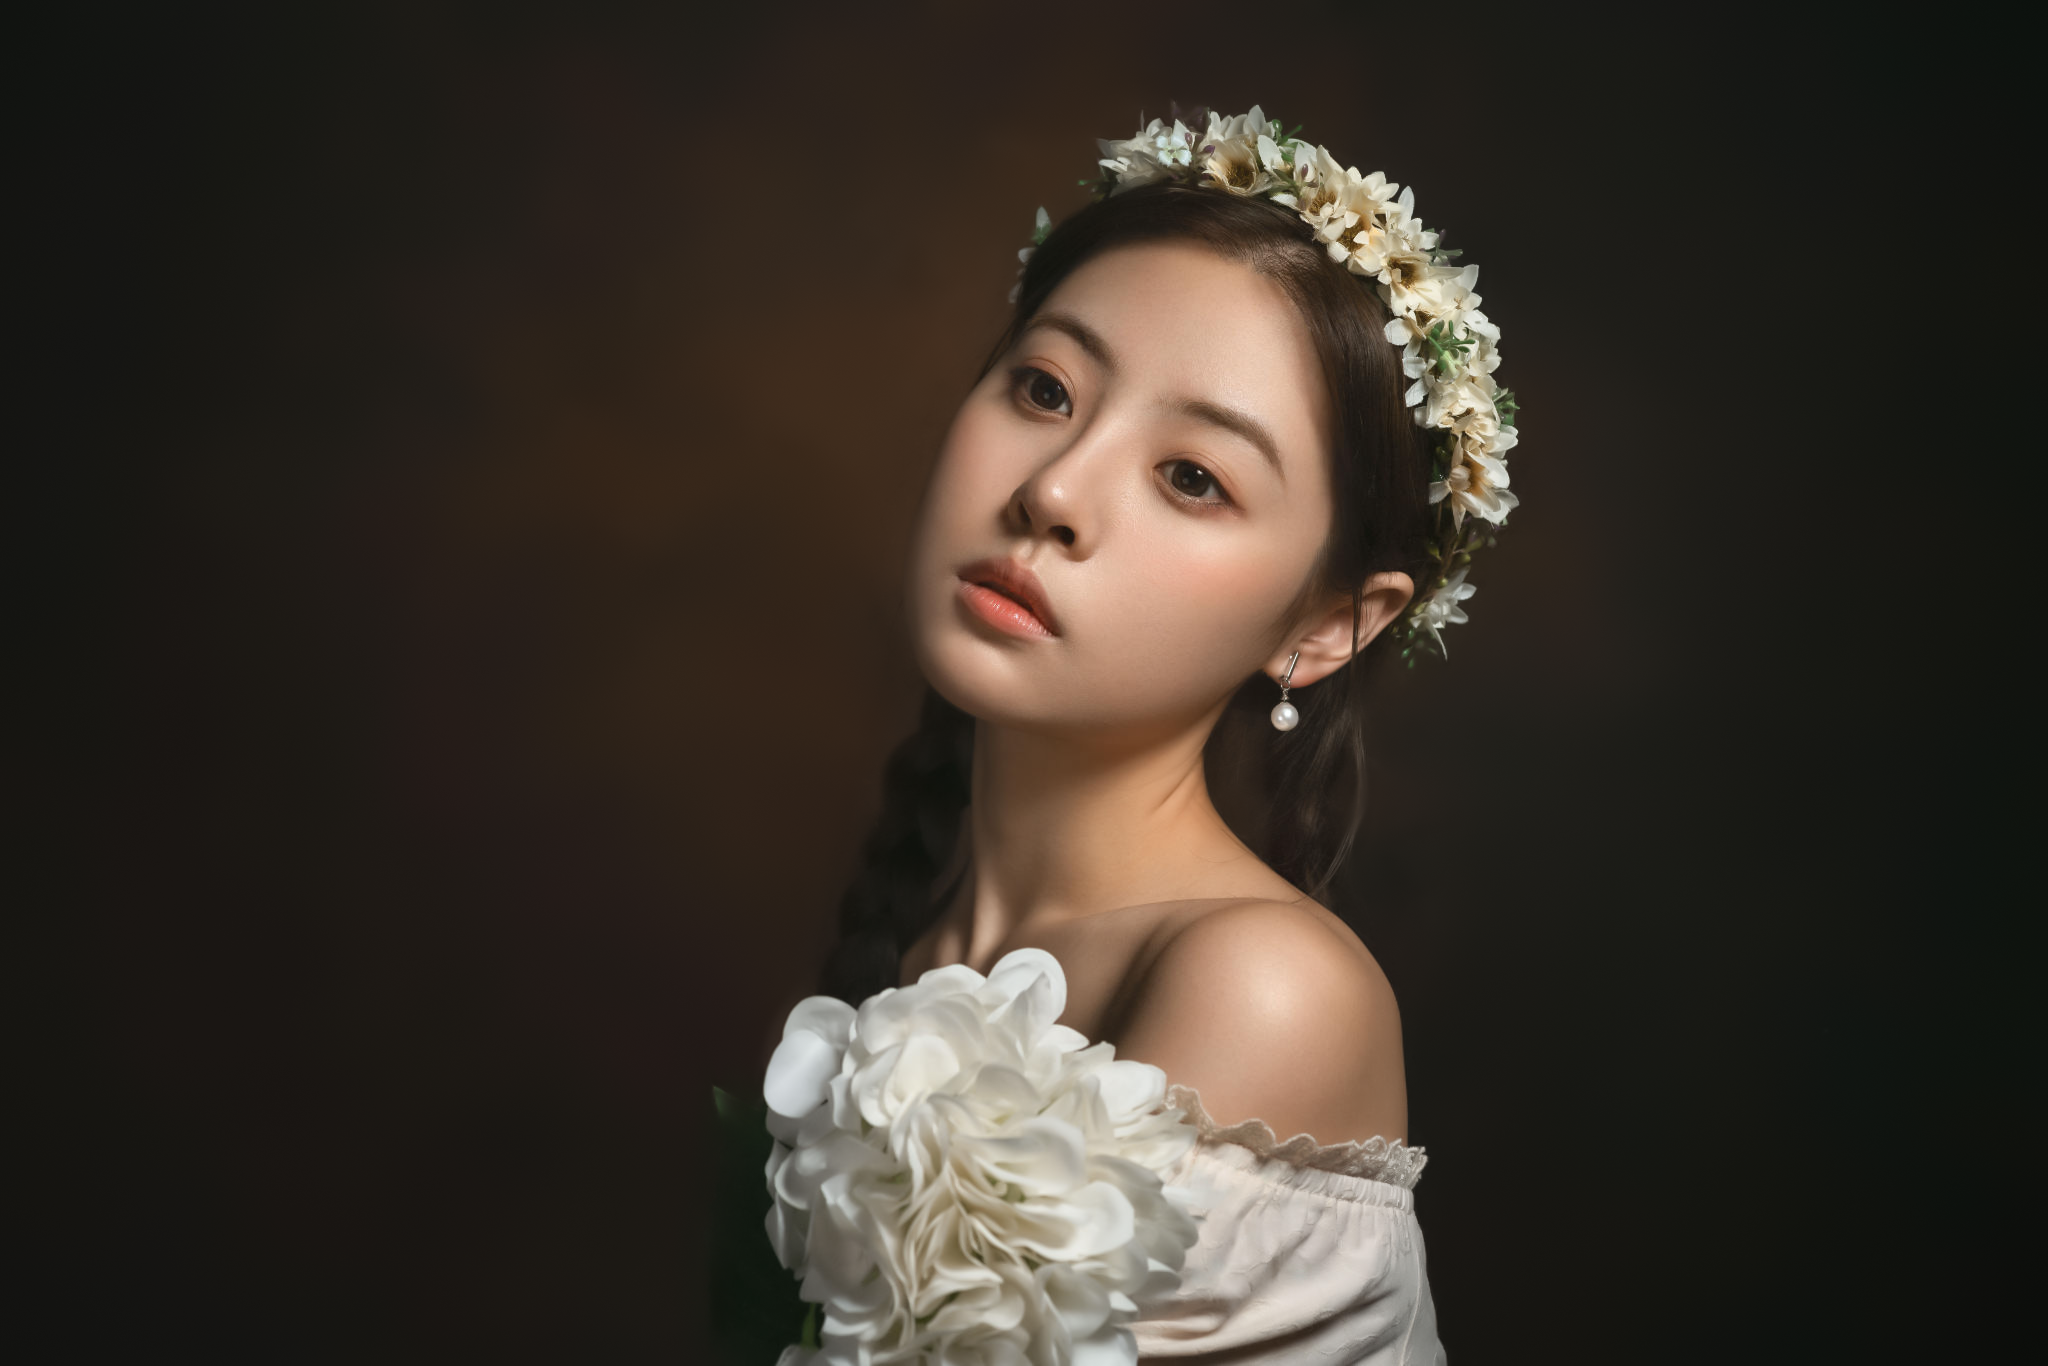 Lee Hu Women Asian Flower In Hair Crown Brunette Braids Bare Shoulders White Clothing Flowers Simple 2048x1366